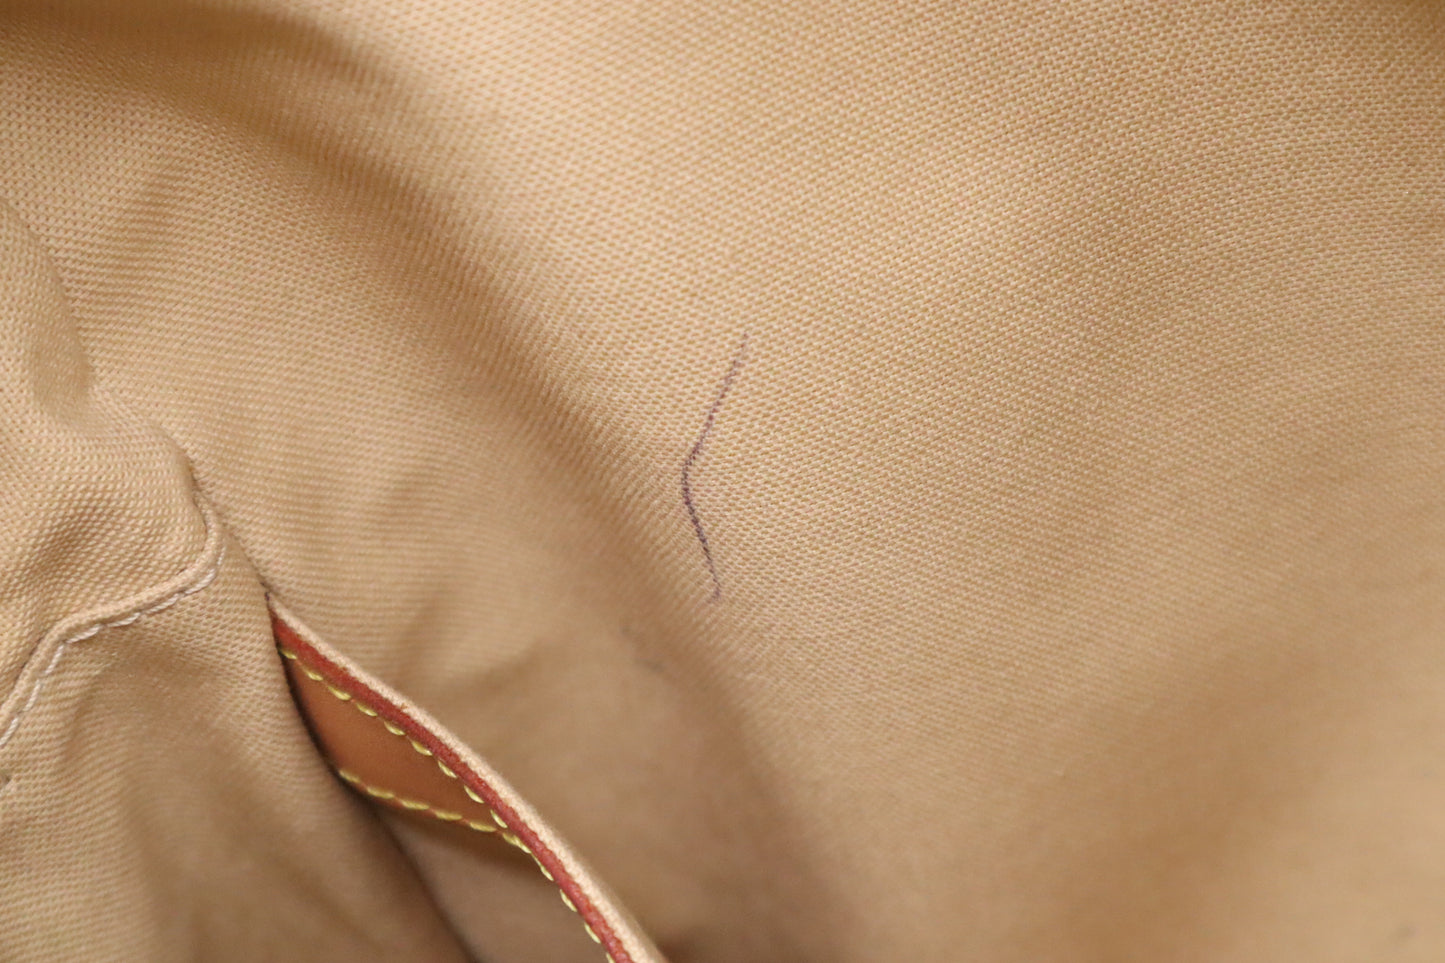 Louis Vuitton Naviglio Shoulder Bag in Damier Azur Canvas